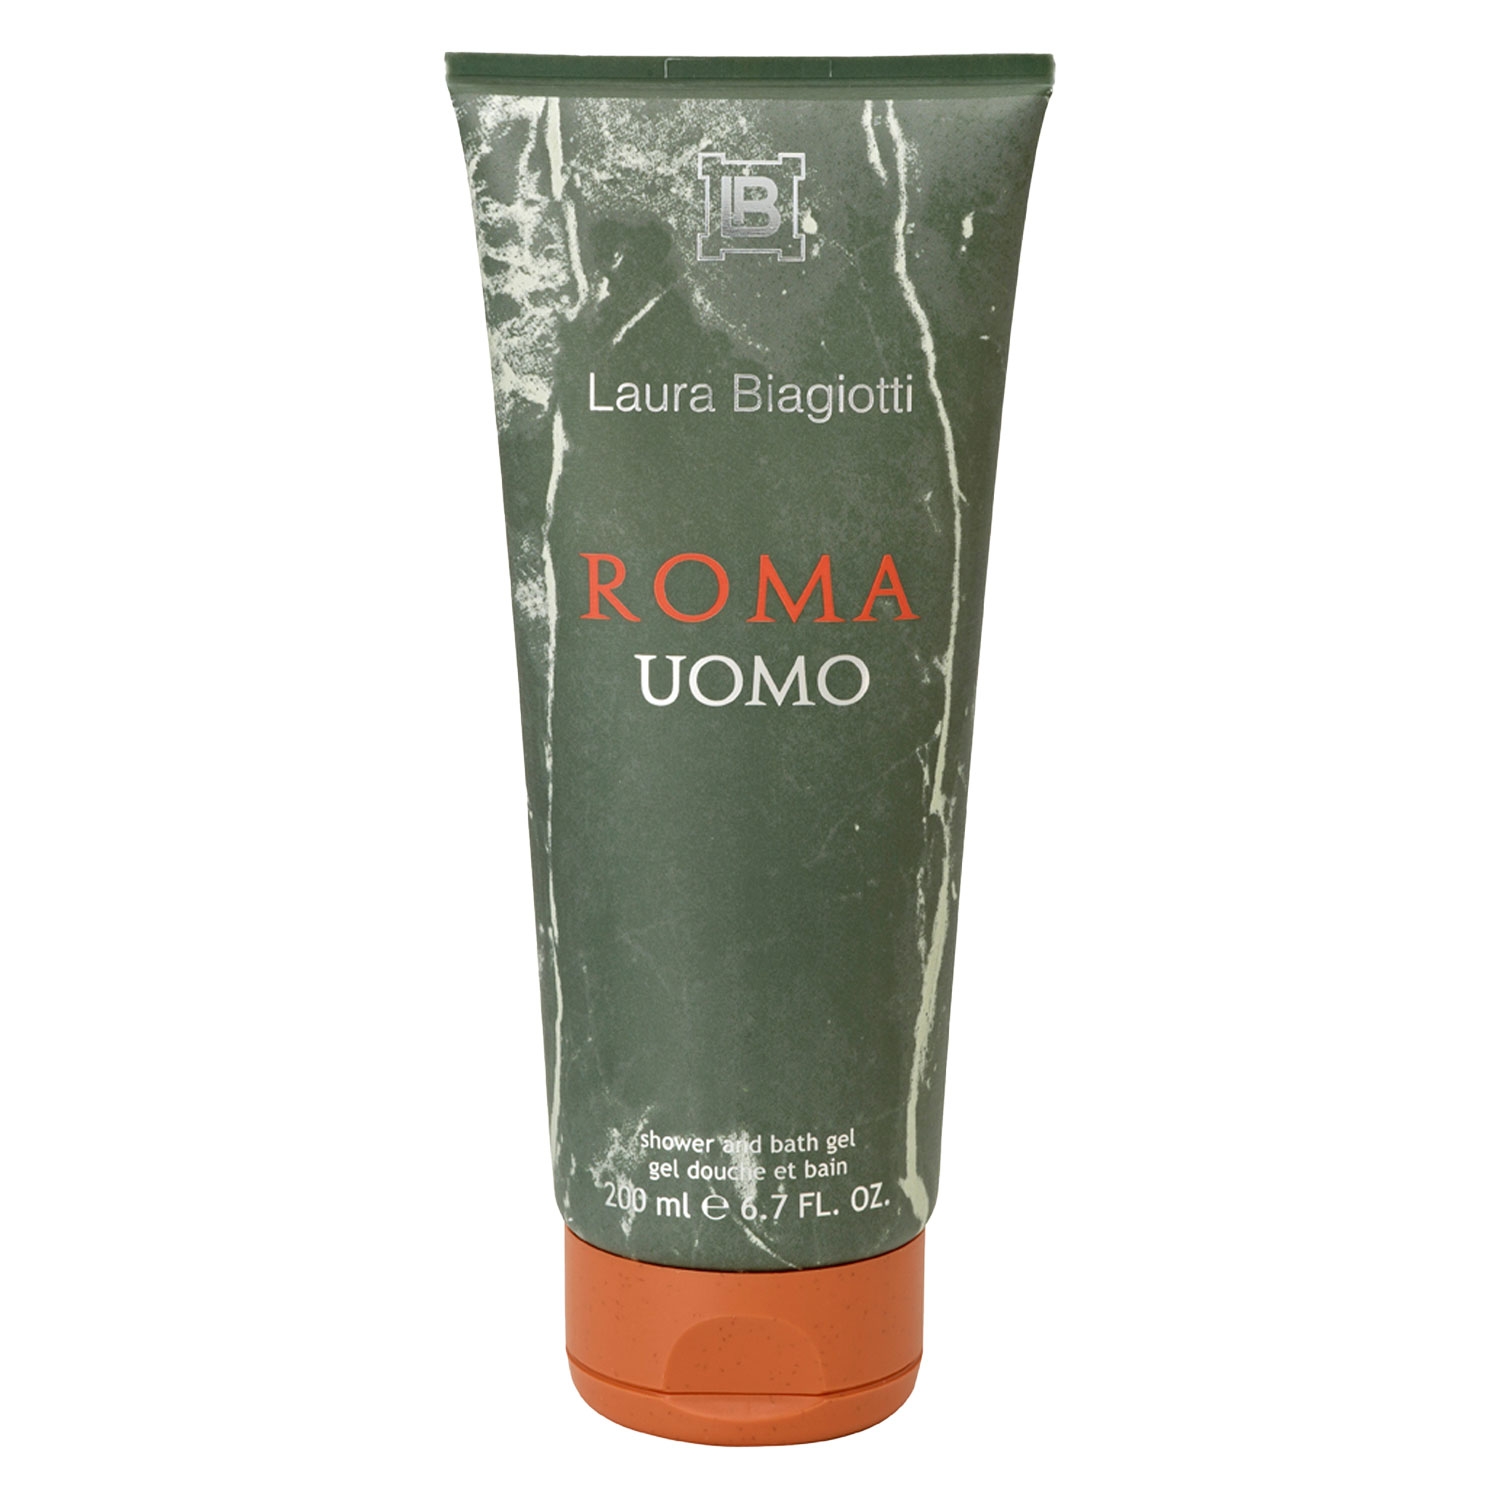 Produktbild von Roma - Uomo Shower Gel